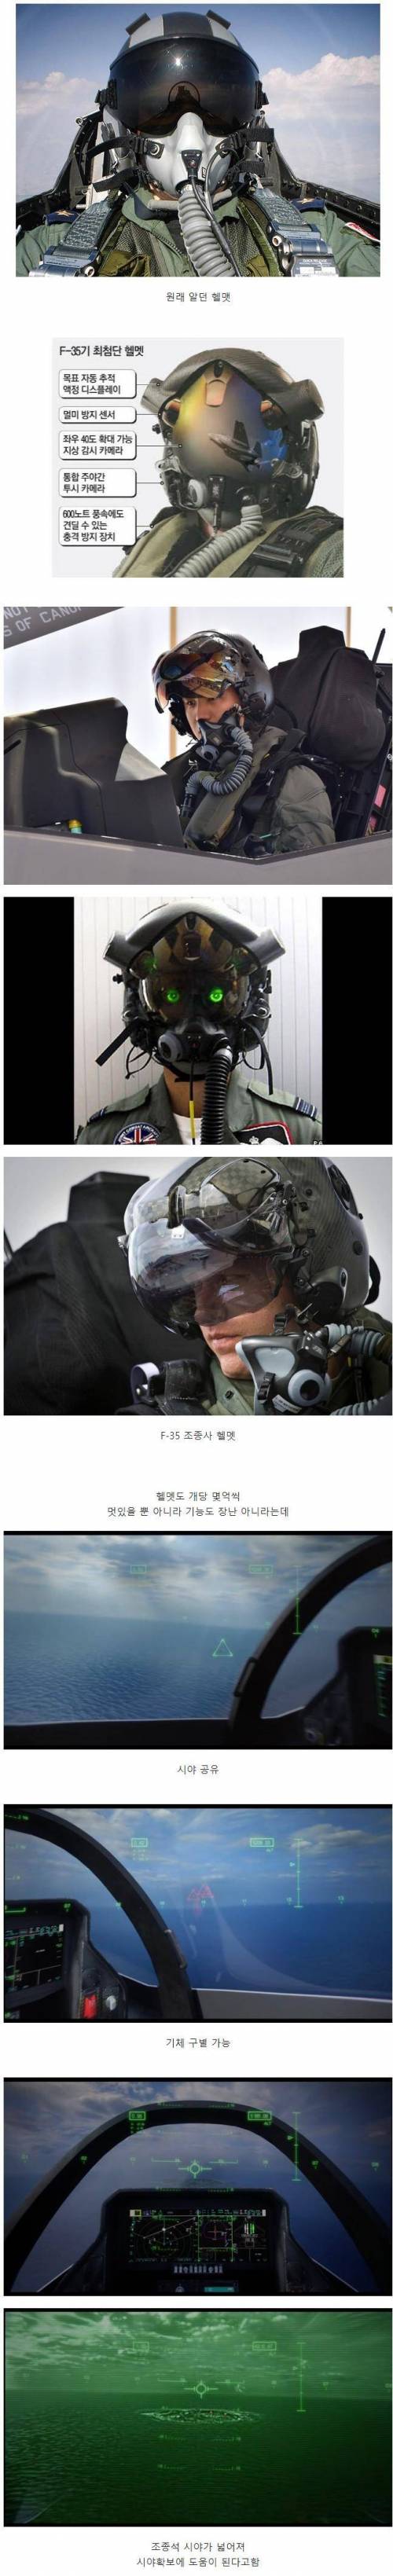 17 전투기 파일럿 헬멧의 진화.jpg